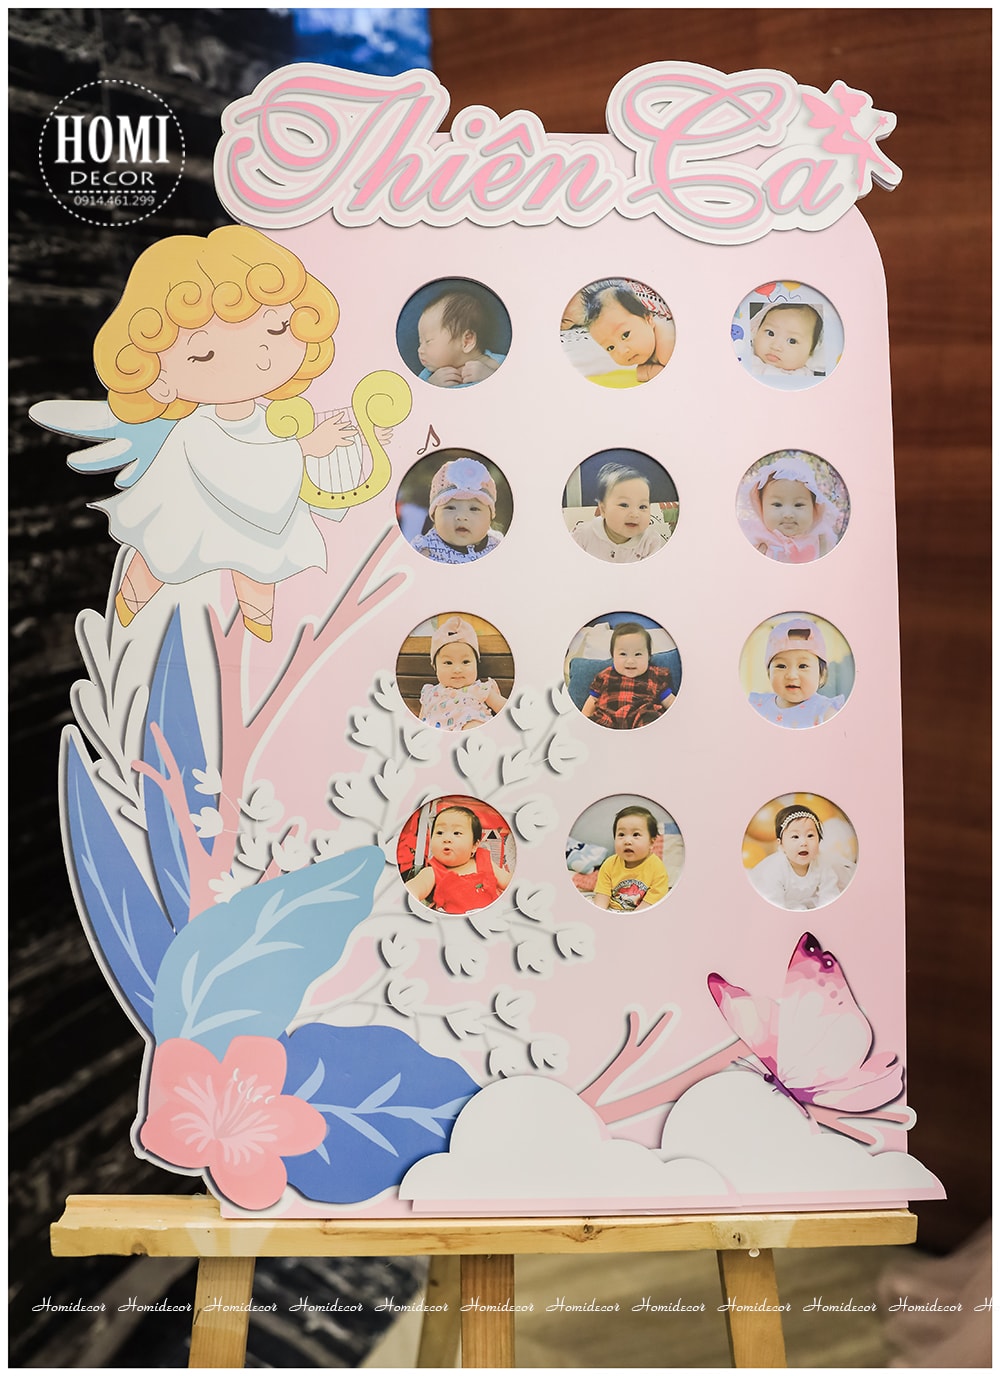 Trang trí sinh nhật cho bé gái chủ đề thiên thần - The Little Angel